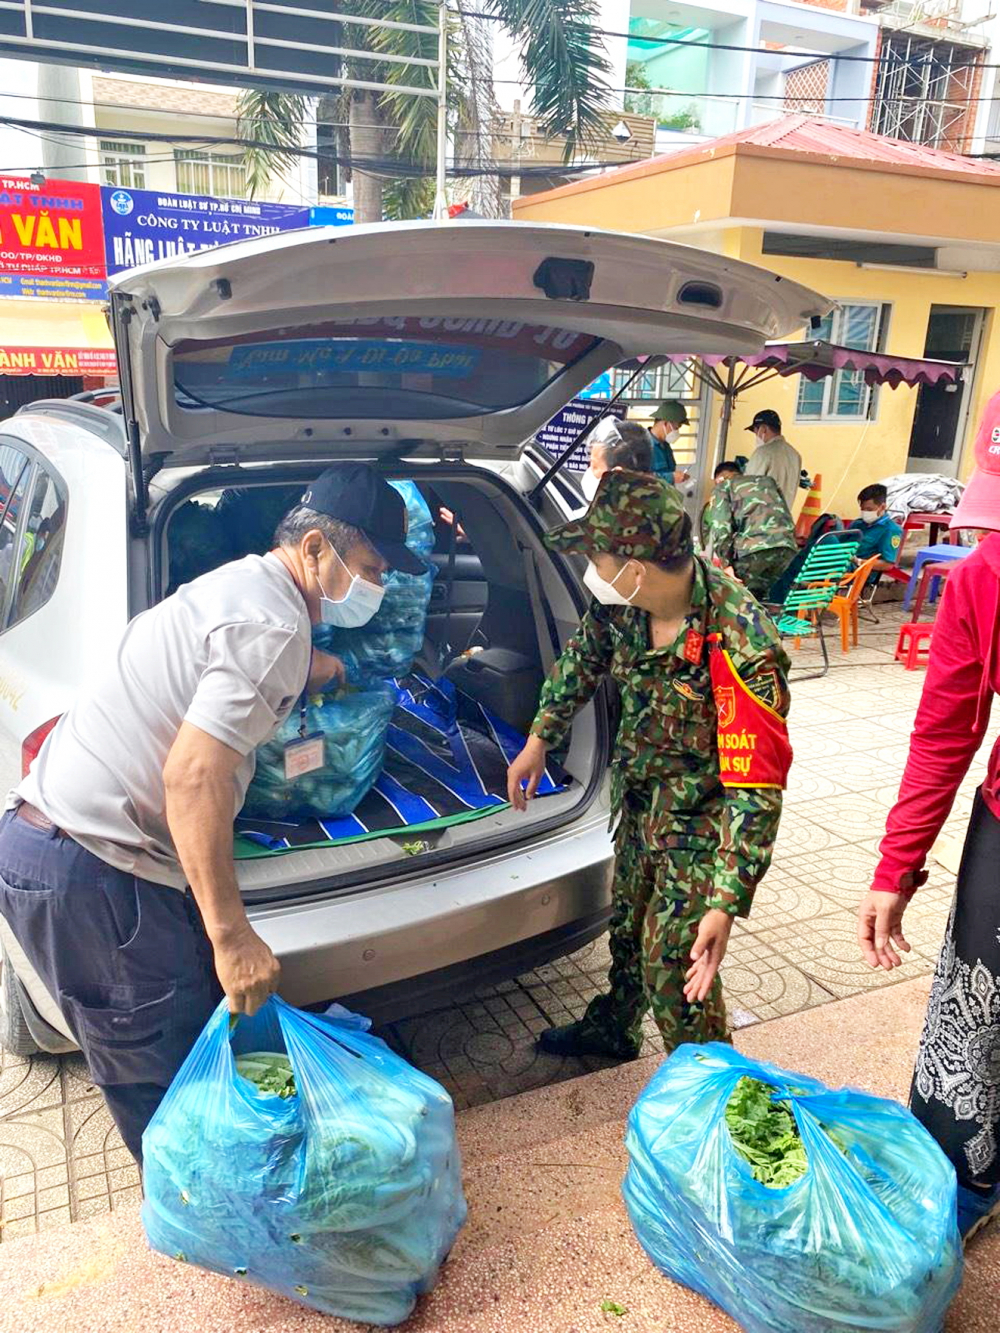 Anh Nguyễn Bằng Thanh Hải đã tự nguyện kết nối và tự bỏ tiền mua các chuyến rau hỗ trợ người dân khó khăn do dịch 